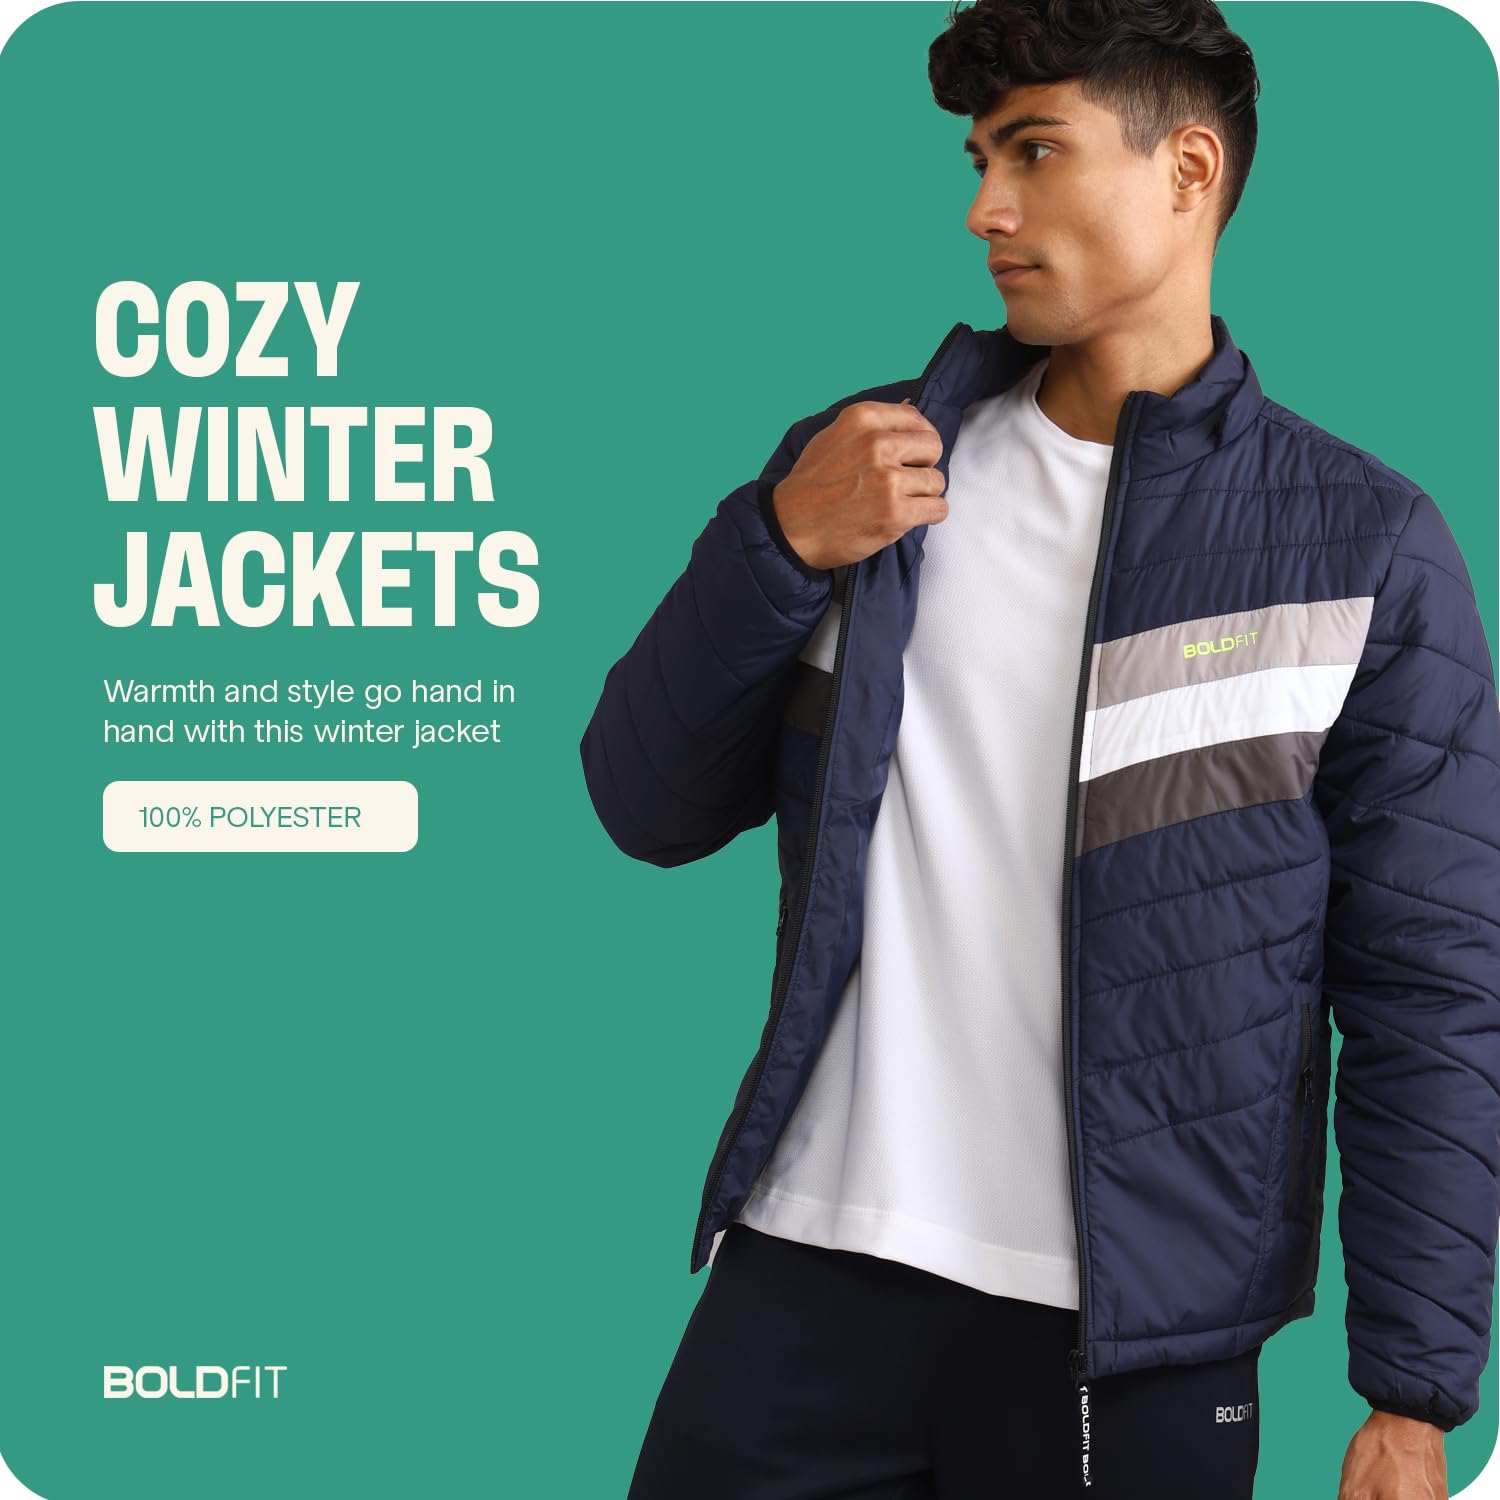 Men's Winter Jackets - Fursac: Jackets & Coats for Men